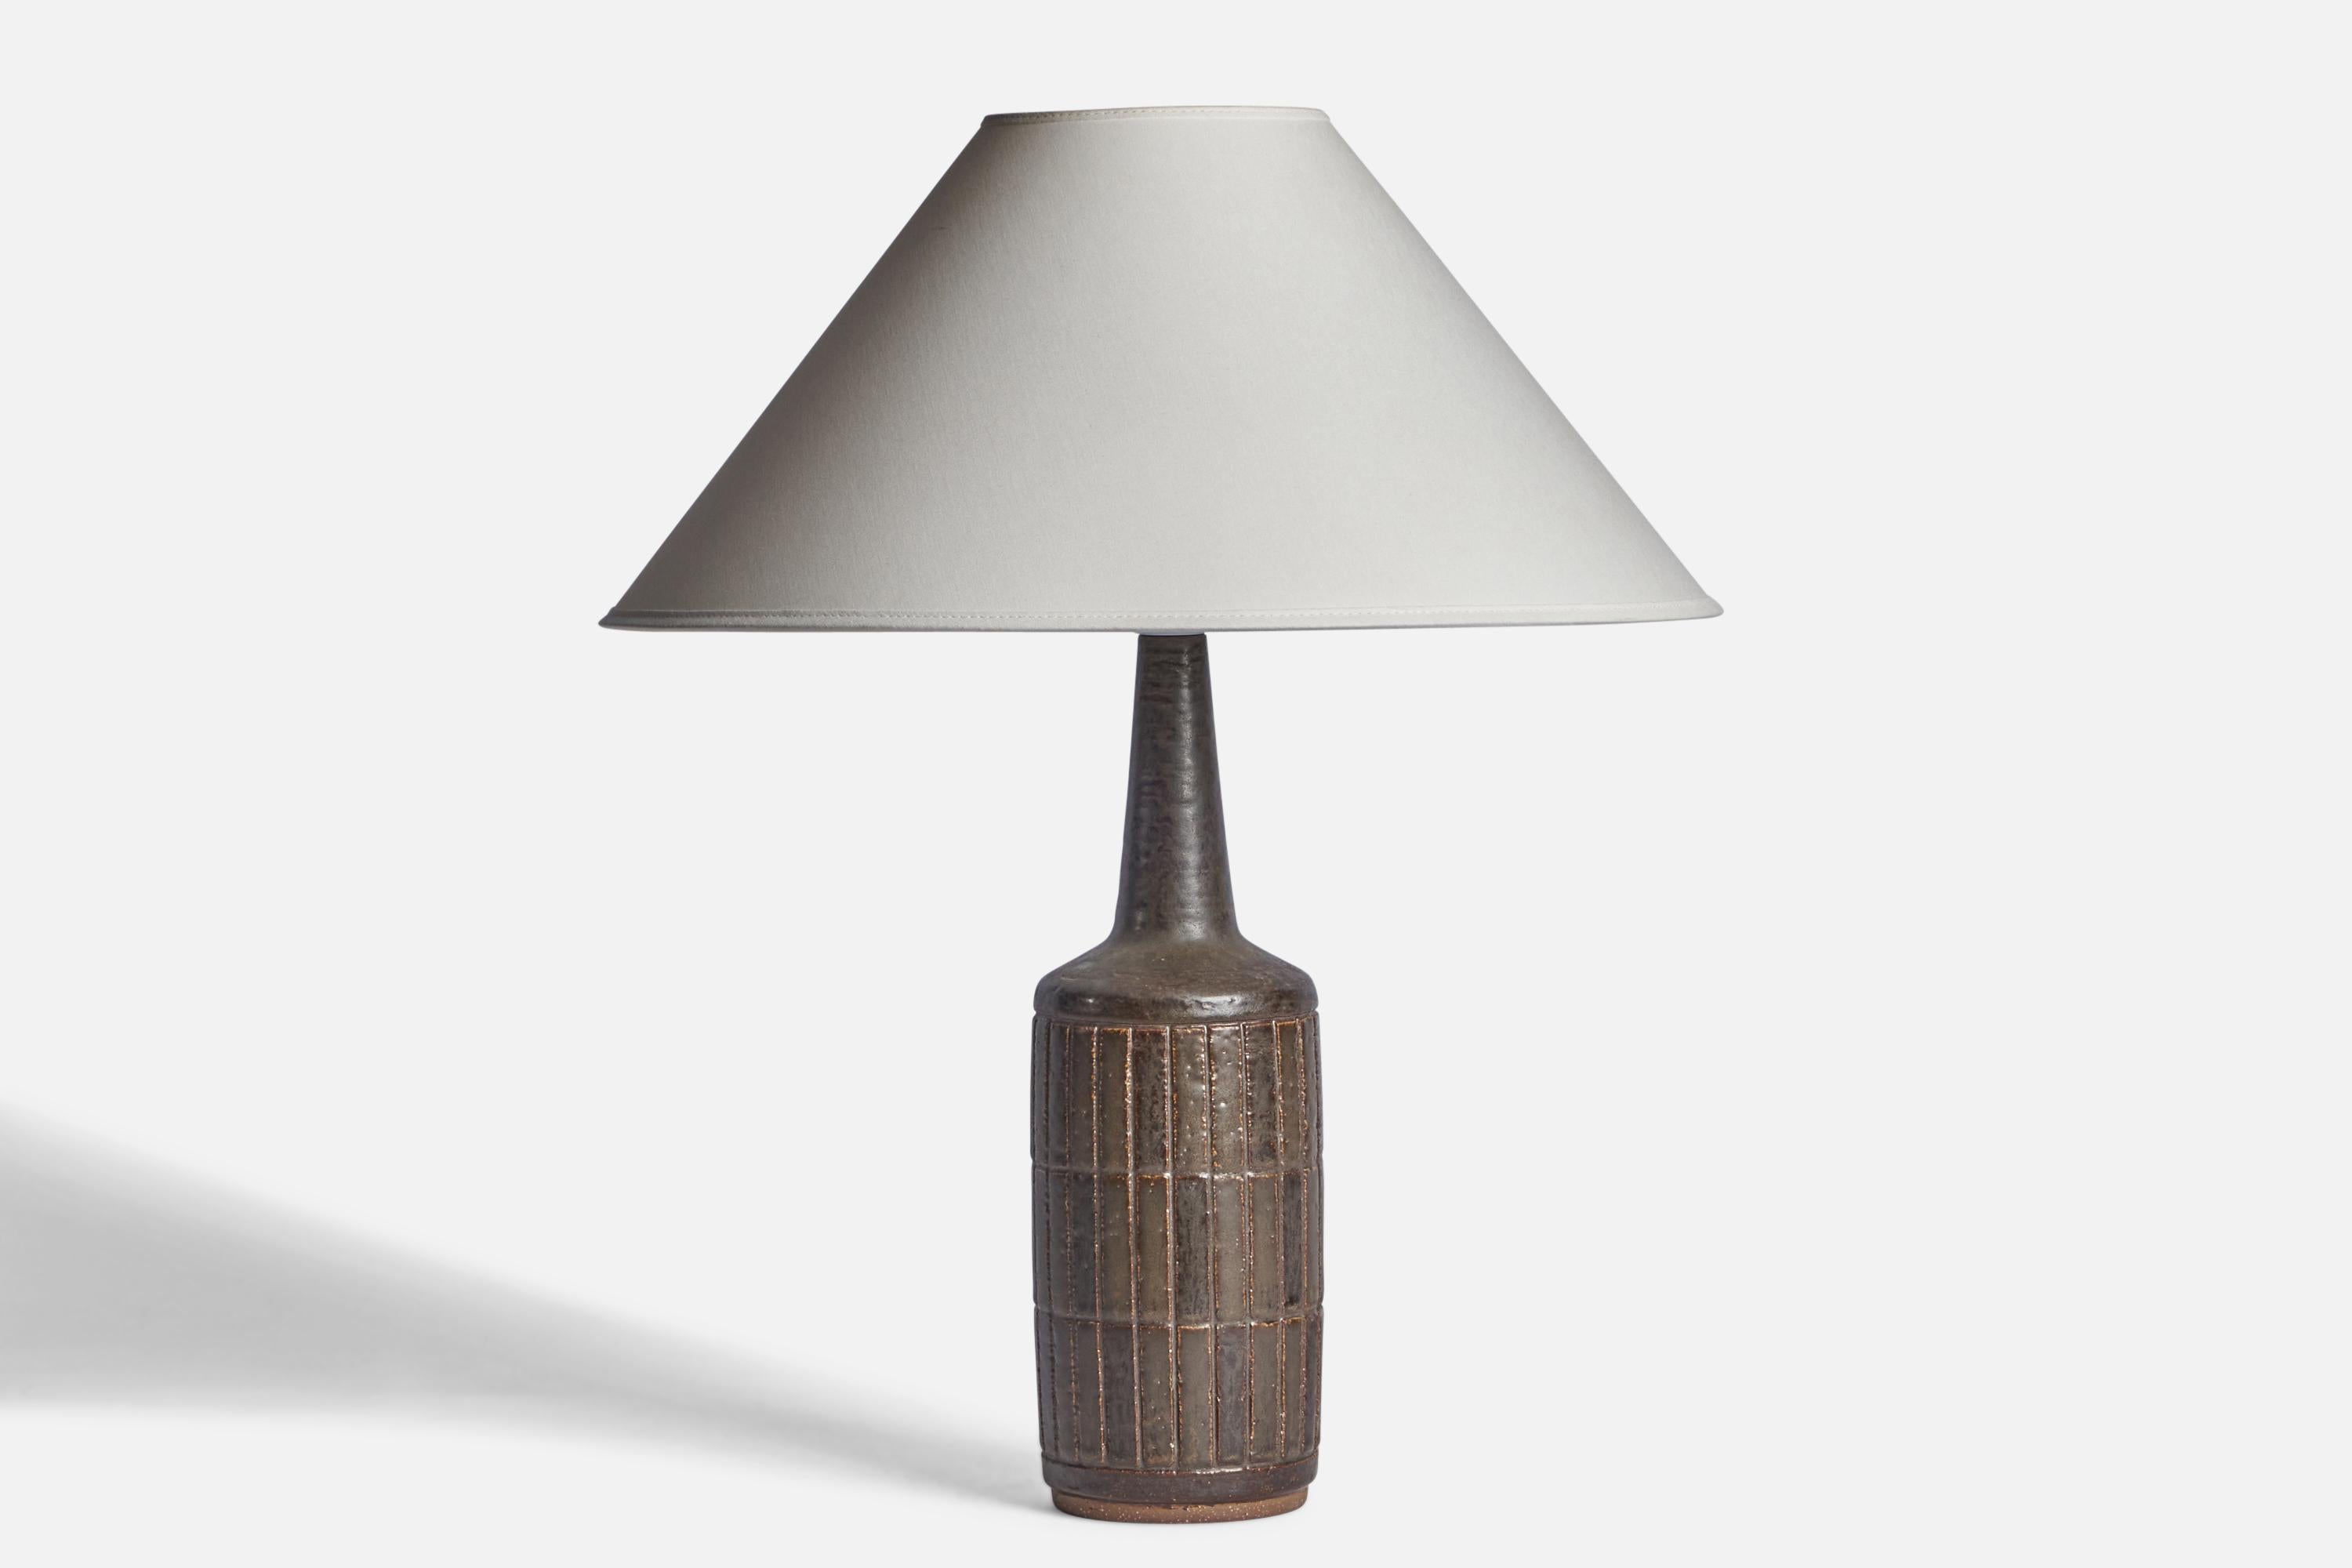 Tischlampe aus braun glasiertem Steingut, entworfen von Per & Annelise Linneman-Schmidt, hergestellt von Palshus, Dänemark, 1960er Jahre.

Abmessungen der Lampe (Zoll): 15,5